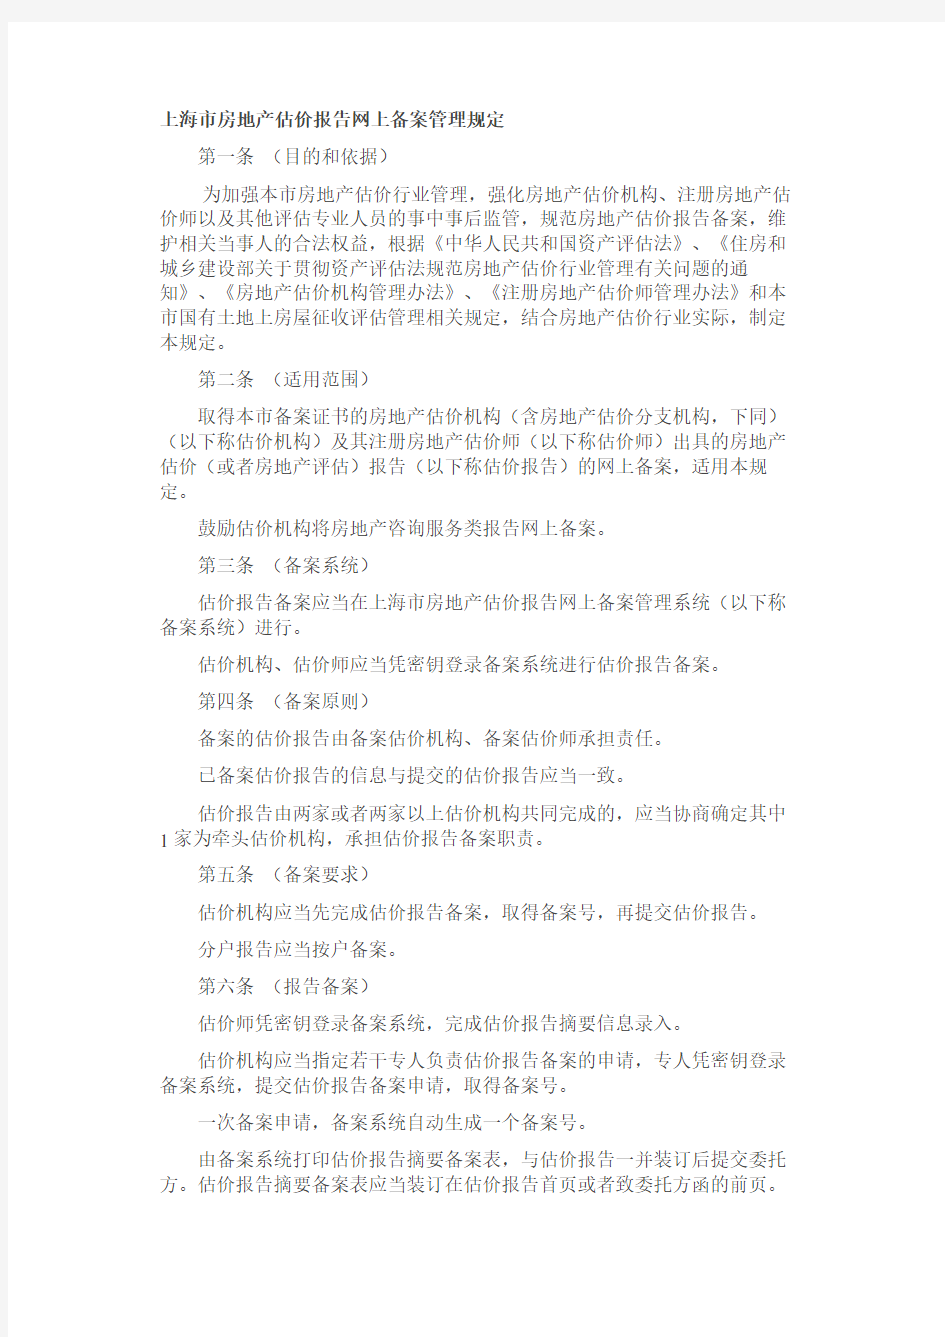 上海市房地产估价报告网上备案管理规定